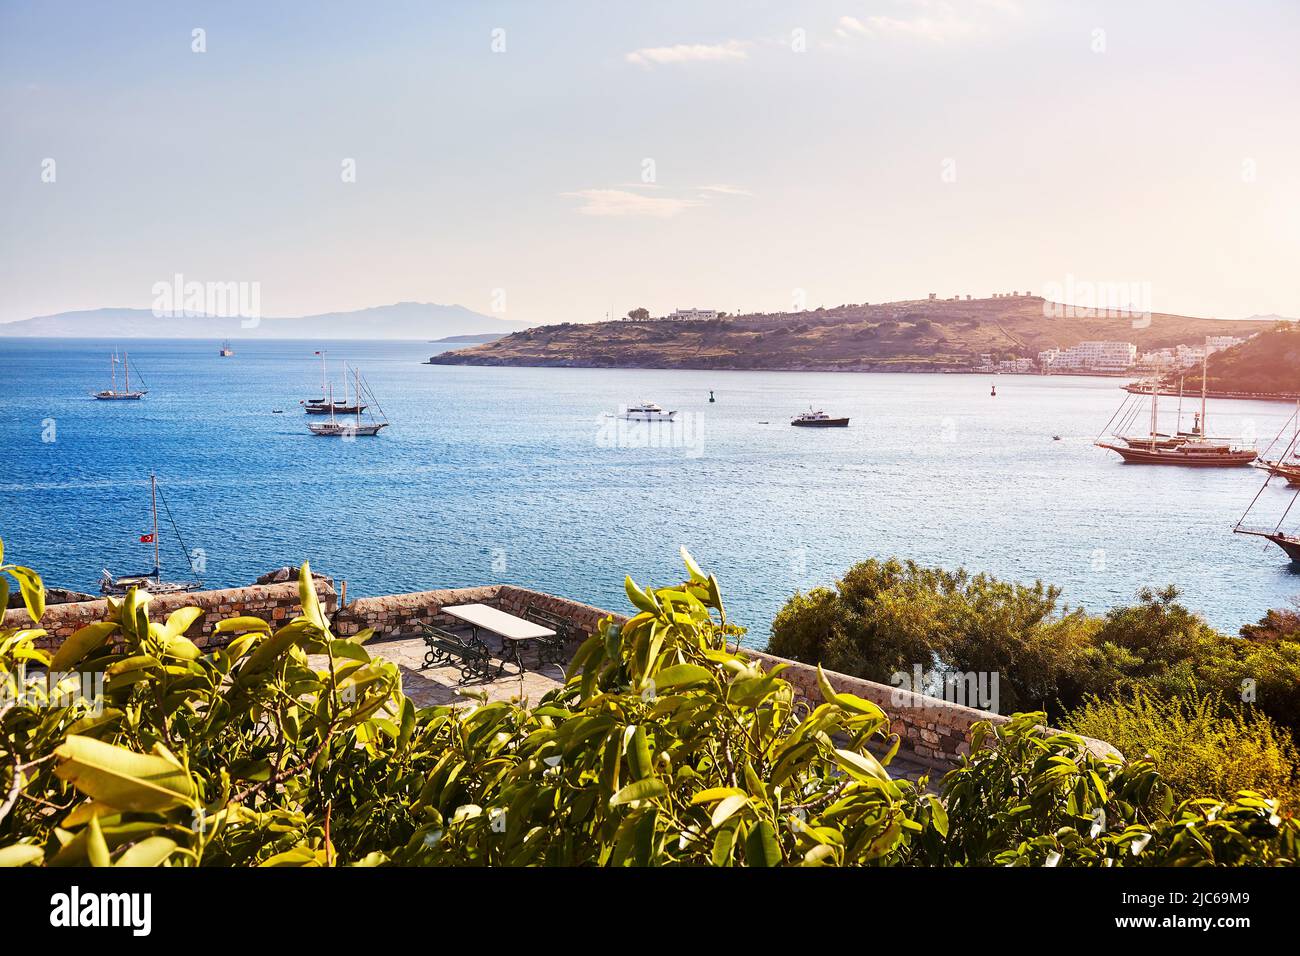 Vista de la playa Bodrum desde el castillo. Barcos de vela, yates en el mar Egeo con casas blancas tradicionales en las colinas de Bodrum ciudad de Turquía Foto de stock